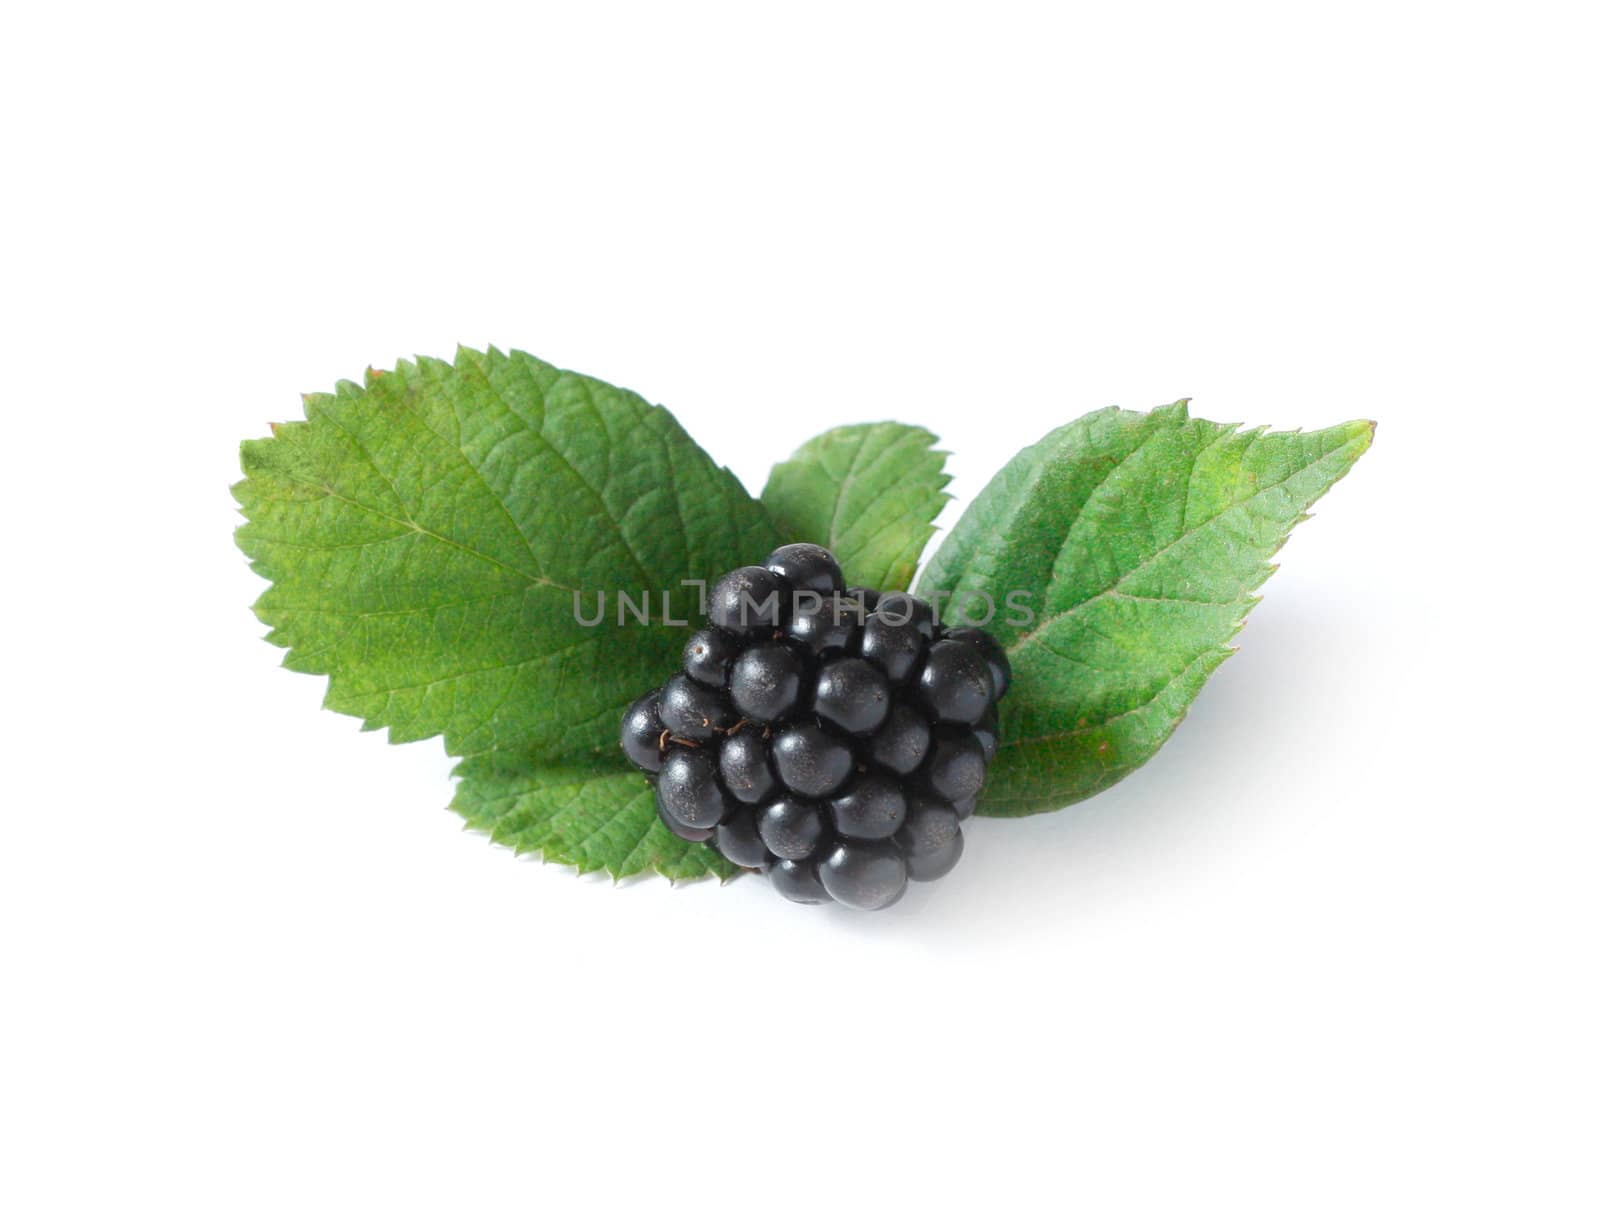 Blackberries by leeser